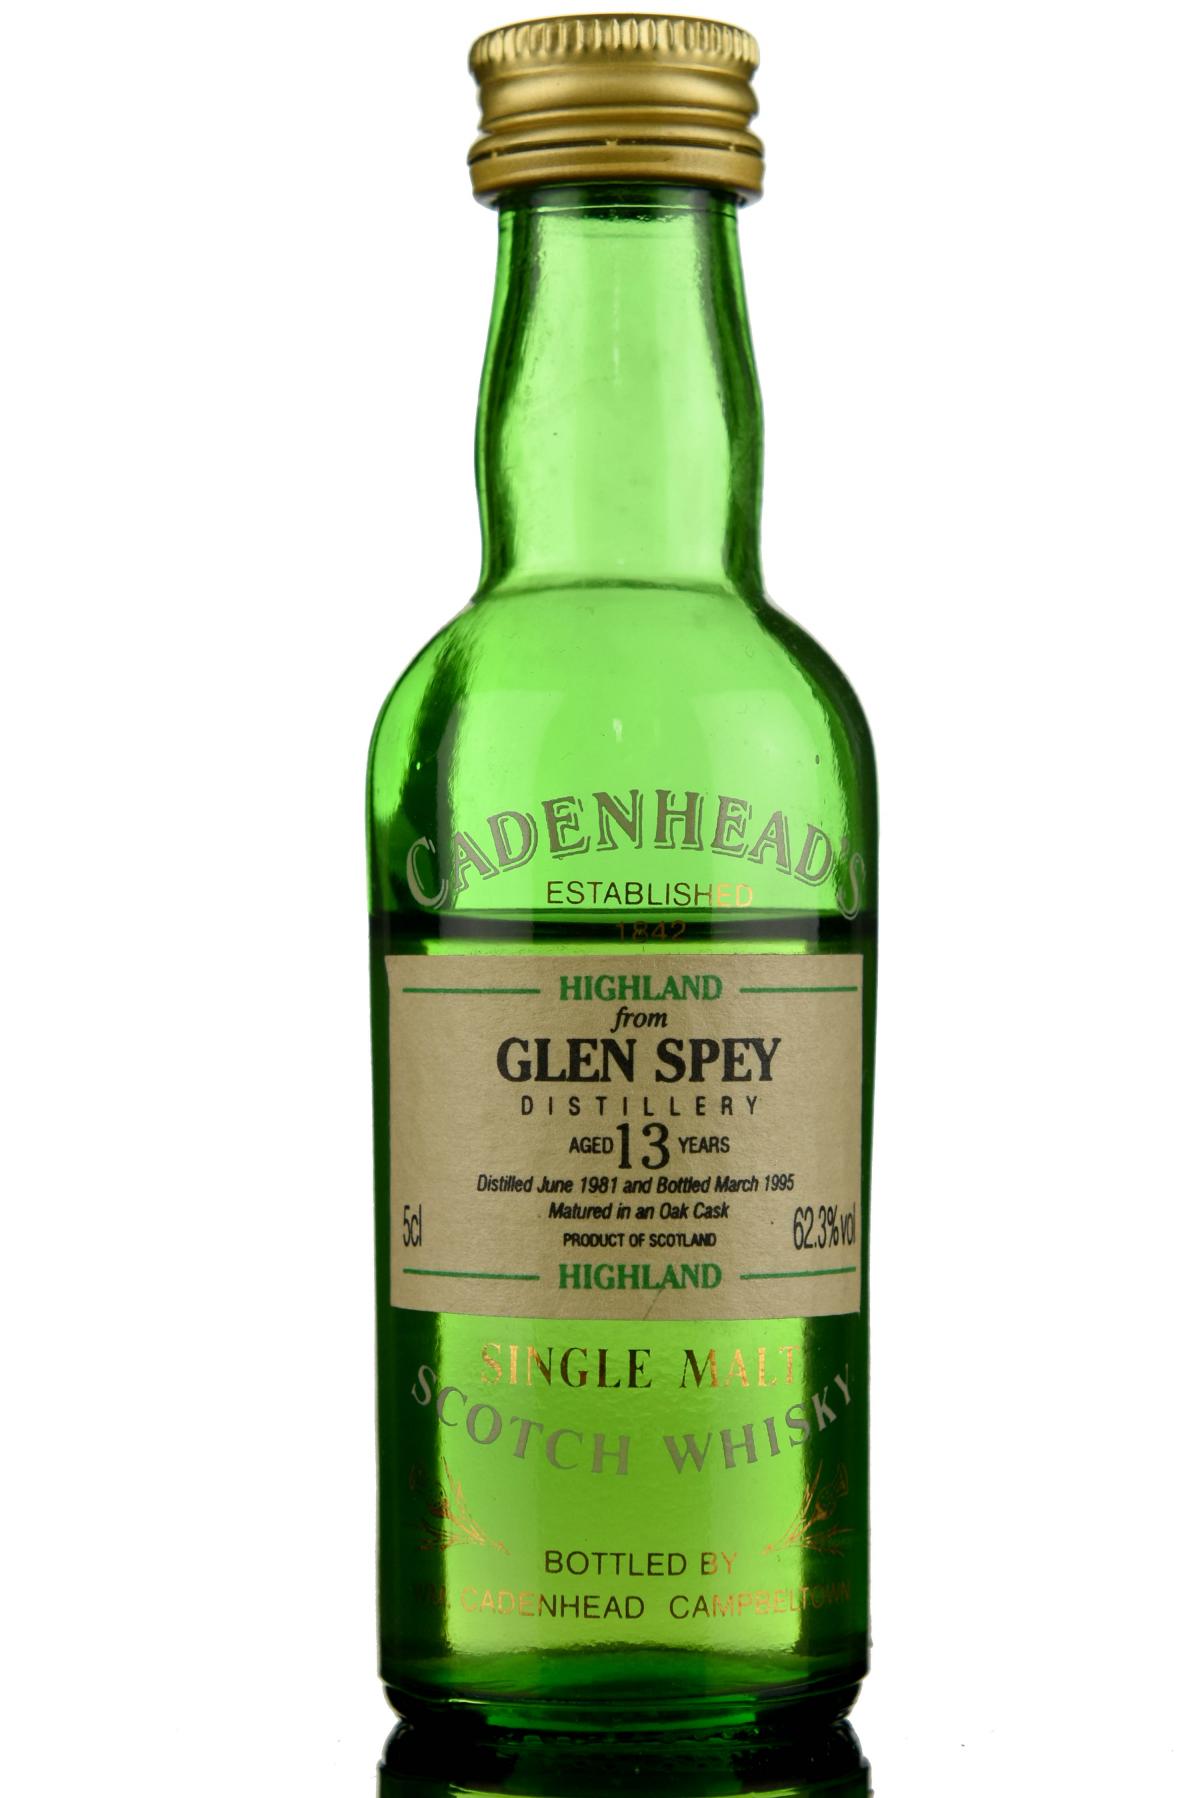 Glen Spey 1981-1995 - 13 Year Old - Cadenhead Miniature